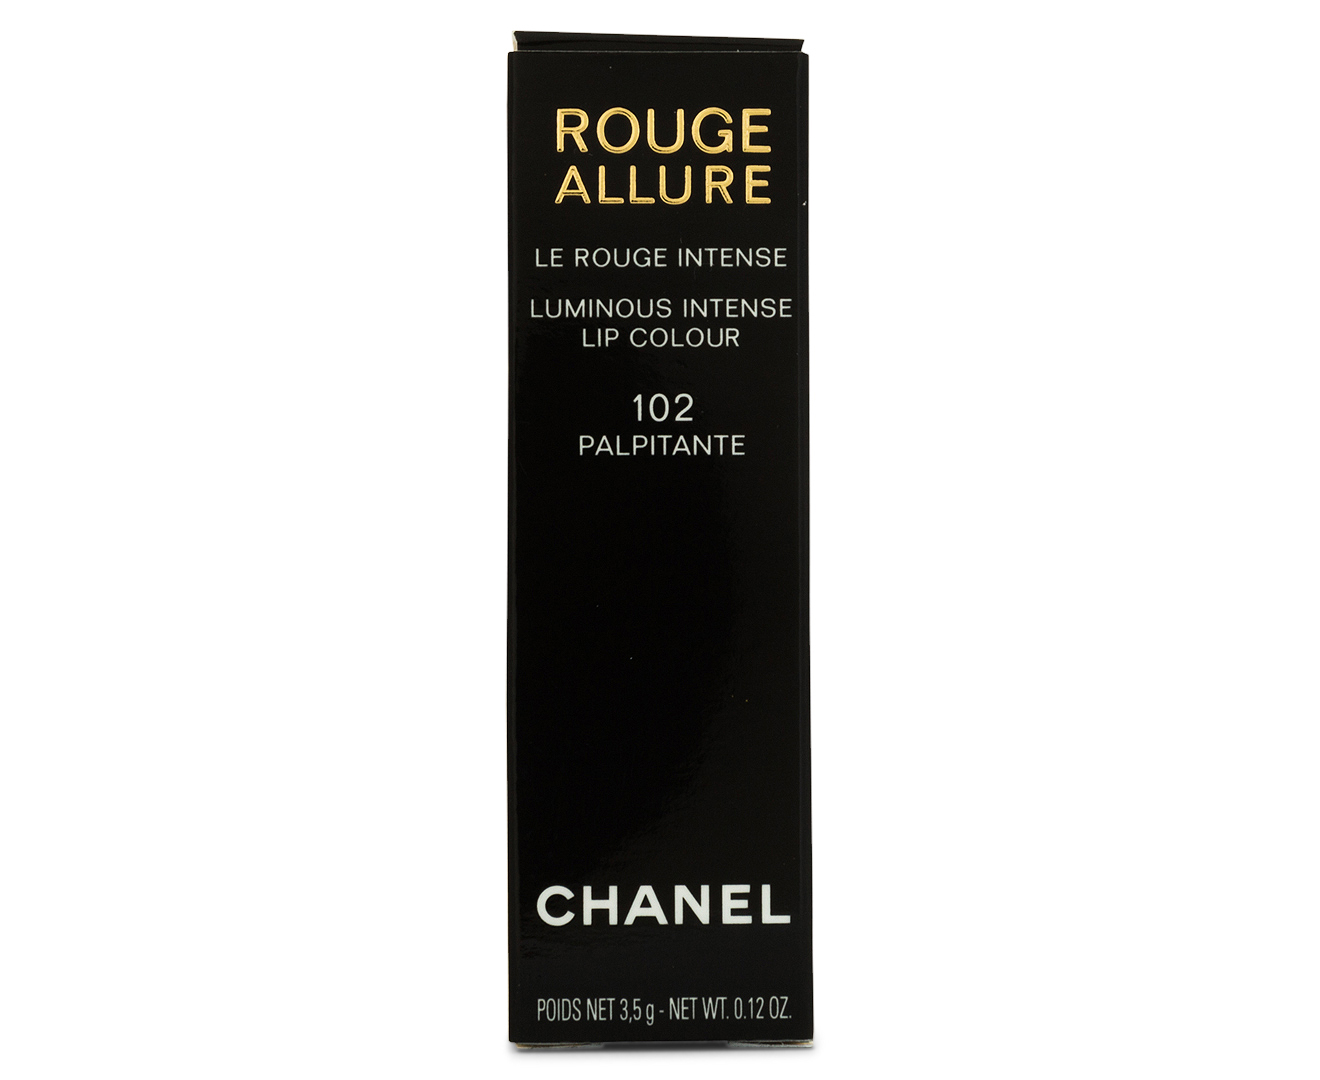 ROUGE ALLURE Luminous Intense Lip Colour 102 - PALPITANTE Lipstick, CHANEL